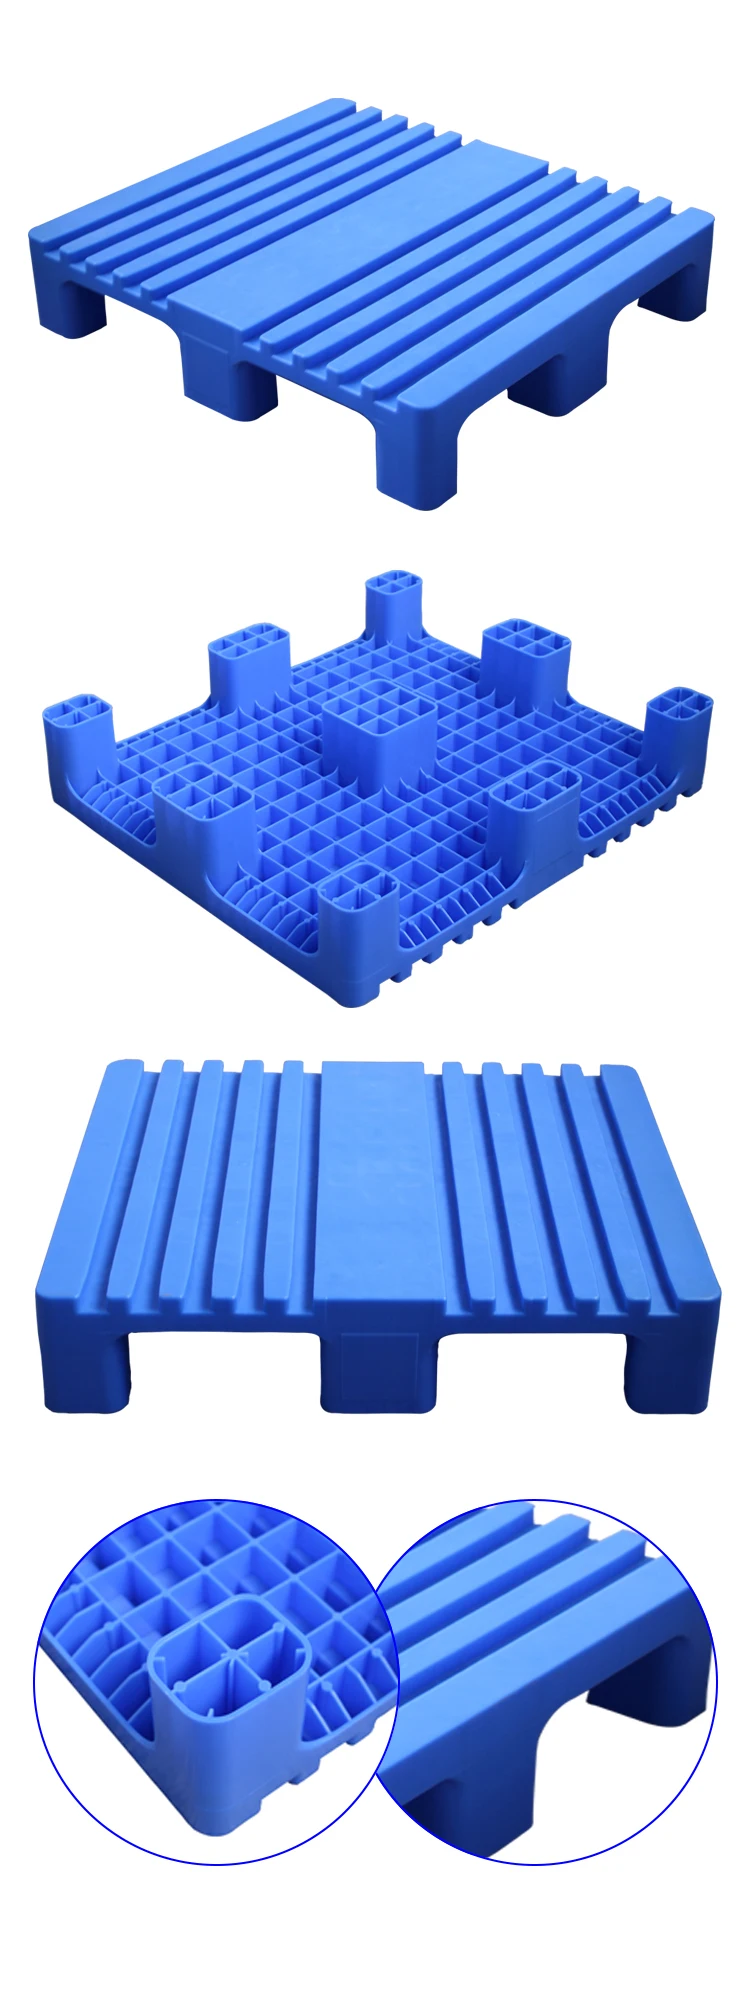 Factory direct sale deck lok pallet for safety stacking system plastic pallet under deck handholds 